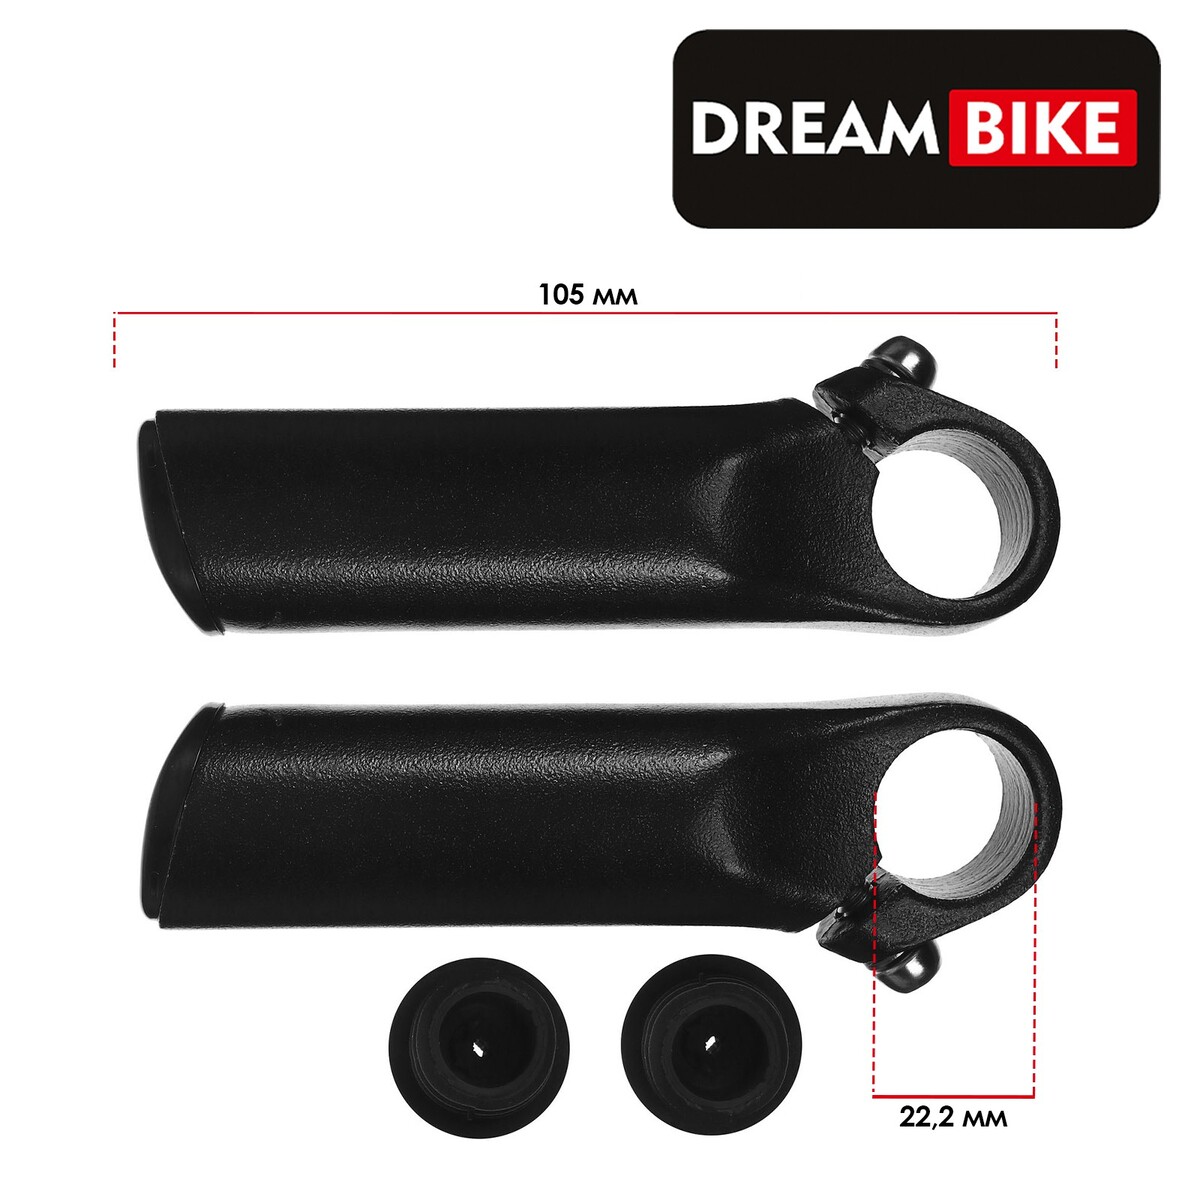 Рога на руль dream bike, алюминиевые, цвет черный